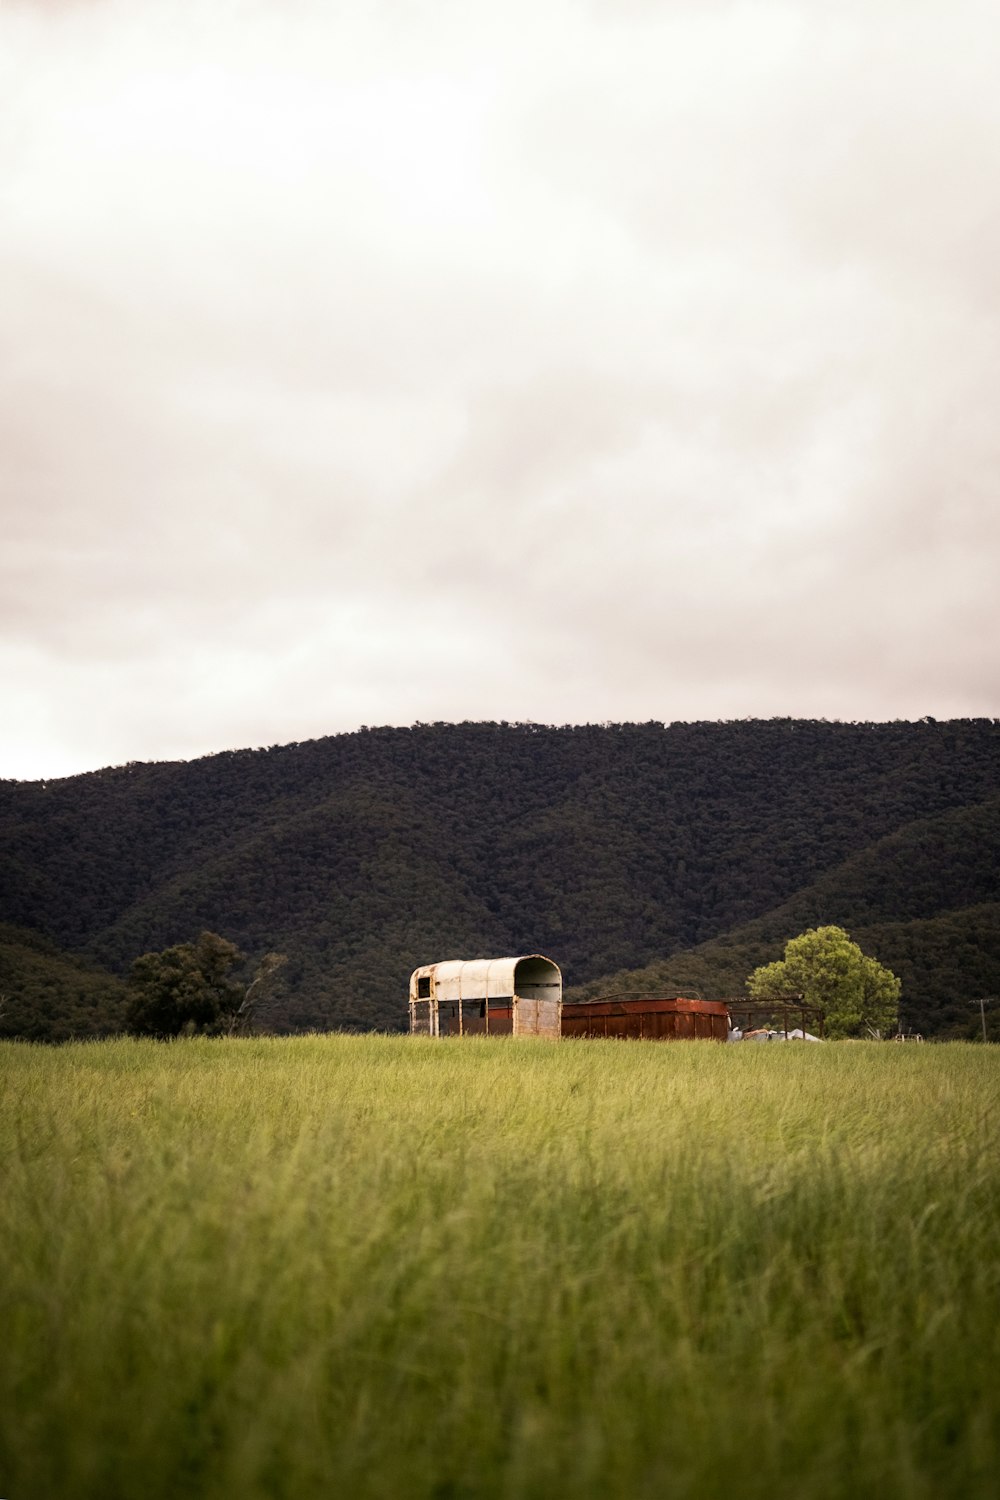 Maison en bois brun sur un champ d’herbe verte près de montagnes vertes sous un ciel nuageux blanc pendant la journée